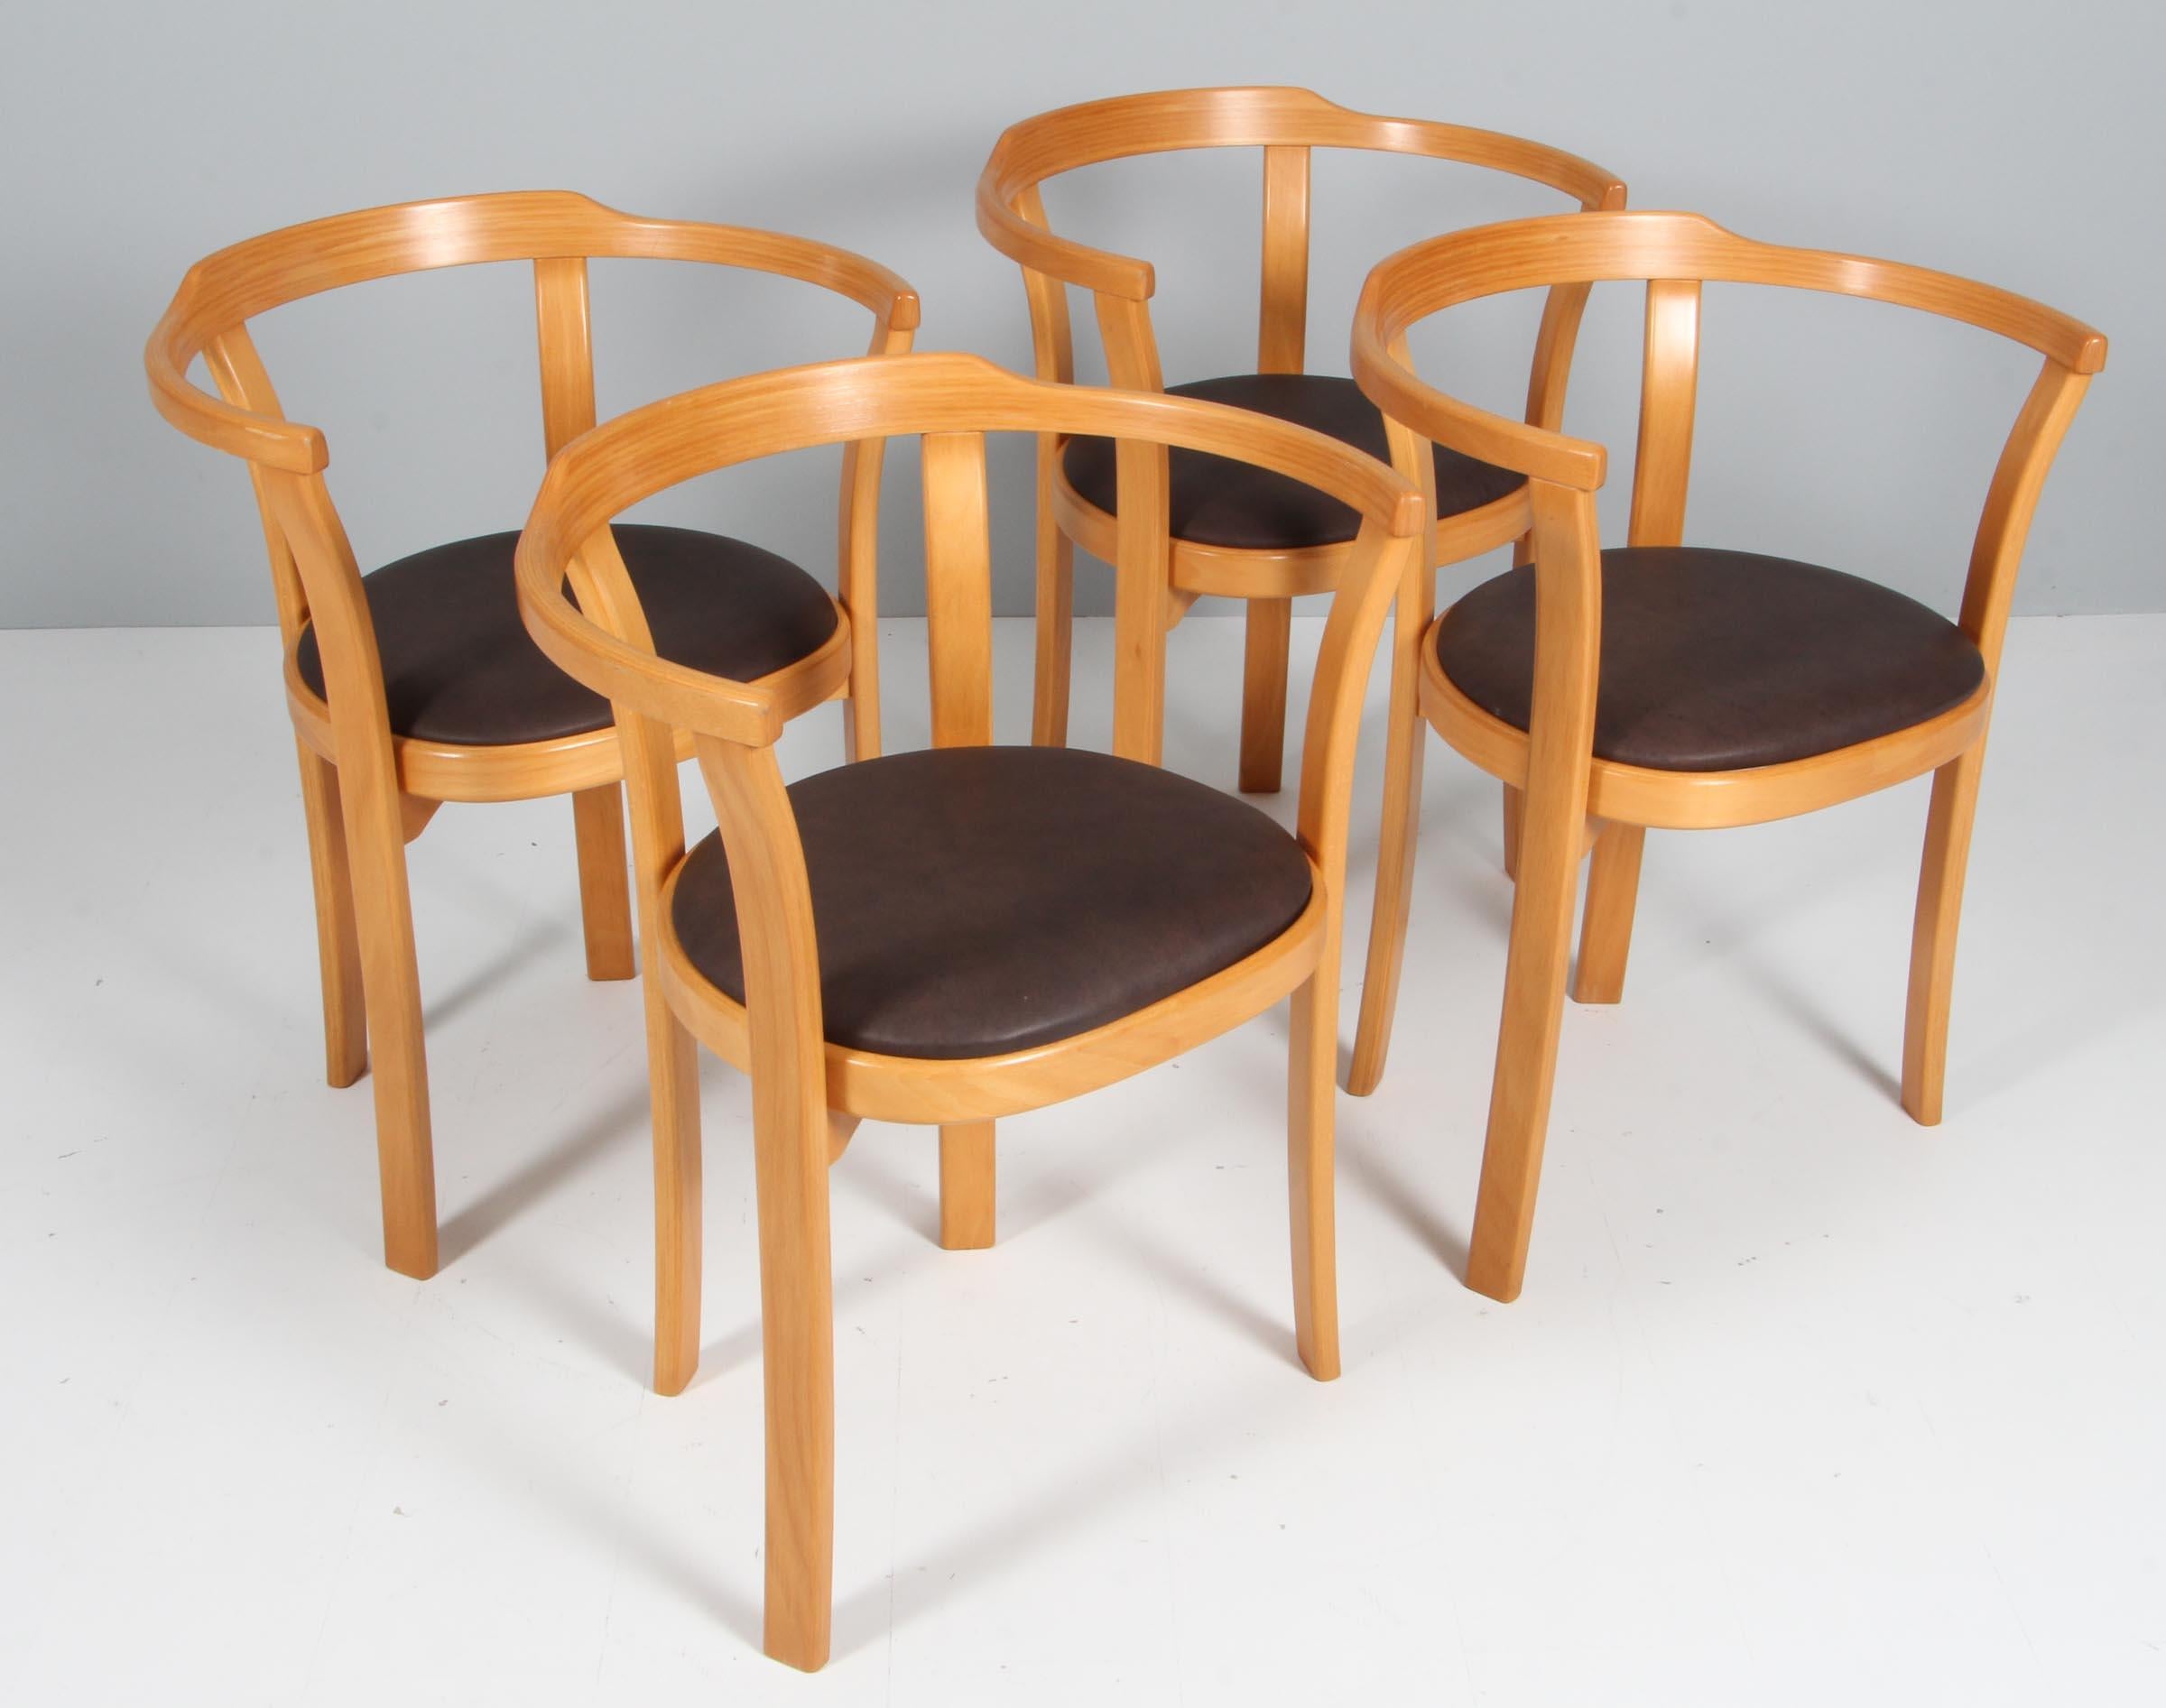 Farstrup set de quatre fauteuils, hêtre laqué

Revêtement en cuir latina mokka.

Fabriqué par Farstrup.